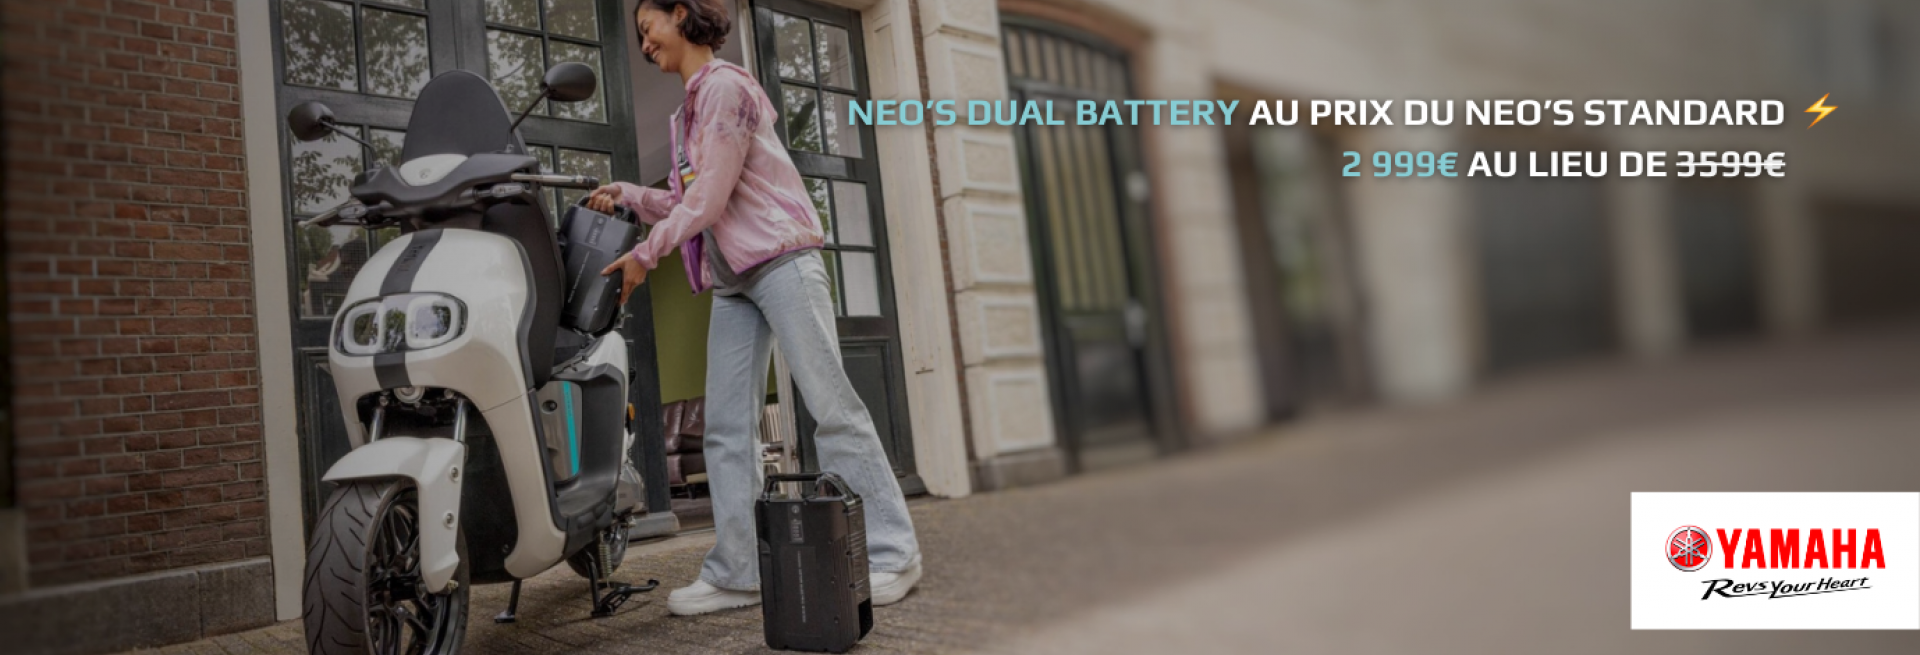 Le NEO’s Dual Battery au prix du NEO’s standard  2 999€ au lieu de 3599€